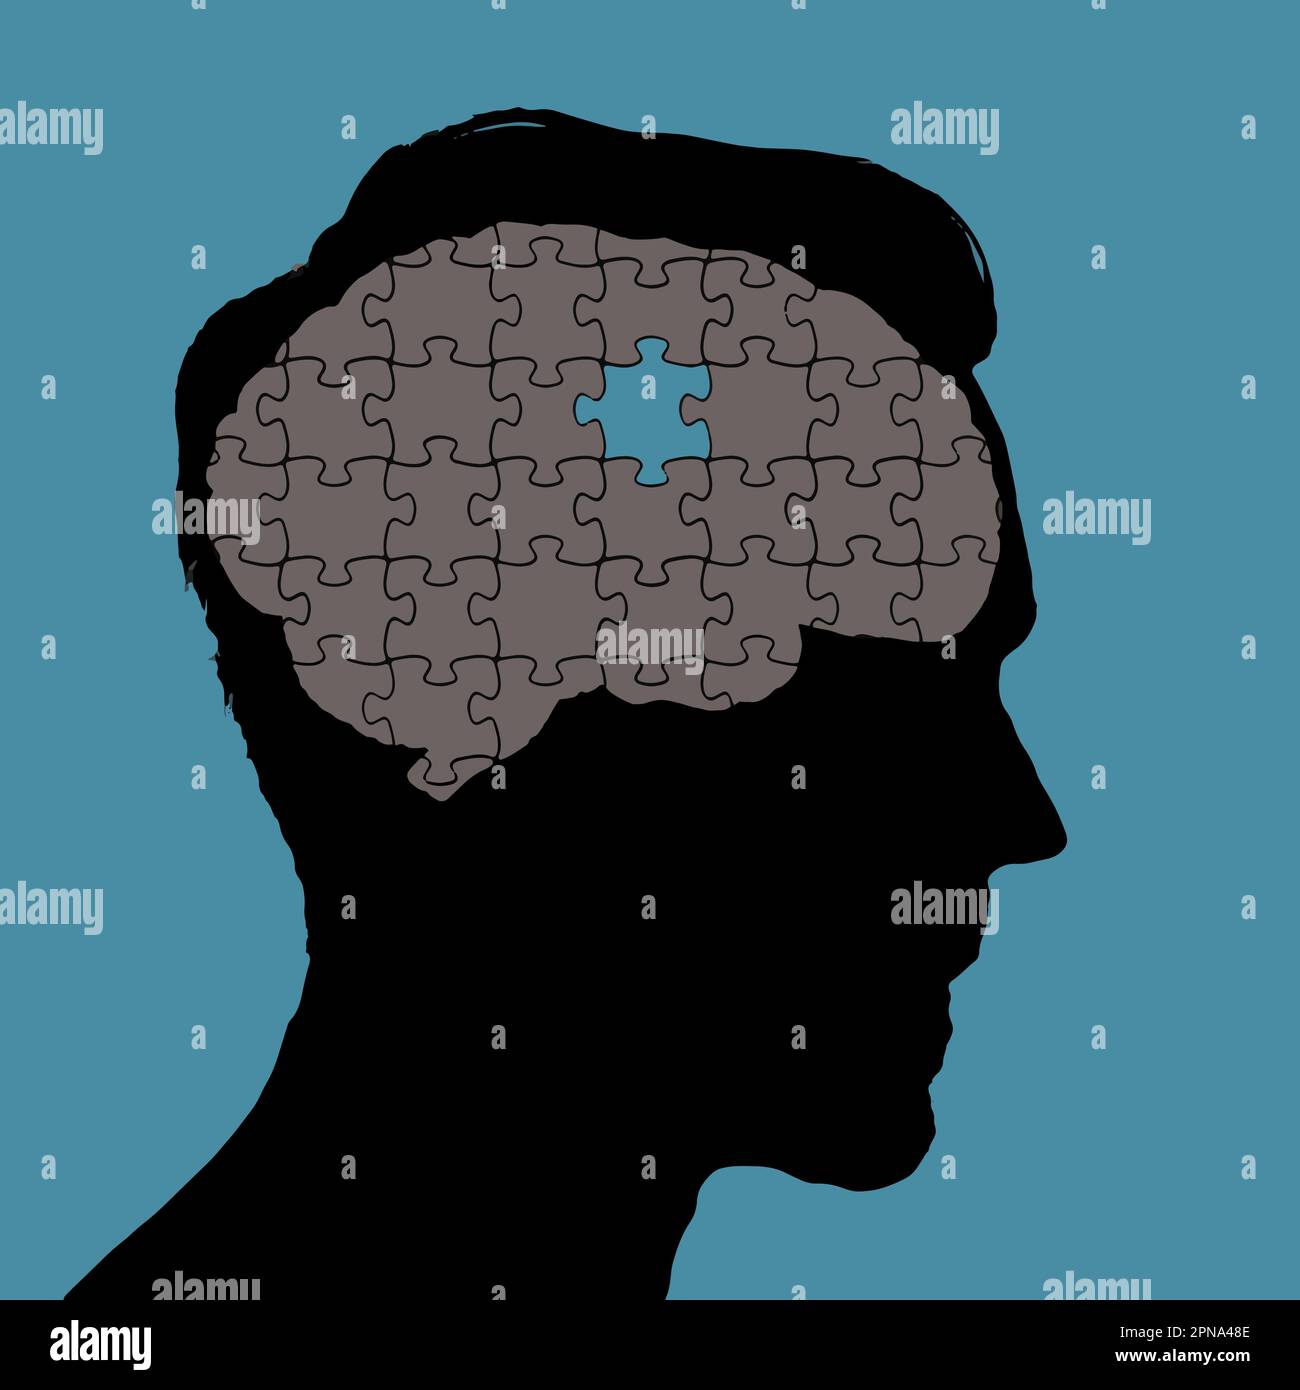 Ein geschädigtes menschliches Gehirn wird als Puzzle dargestellt, bei dem ein Teil in einer Vektordarstellung fehlt. Stock Vektor